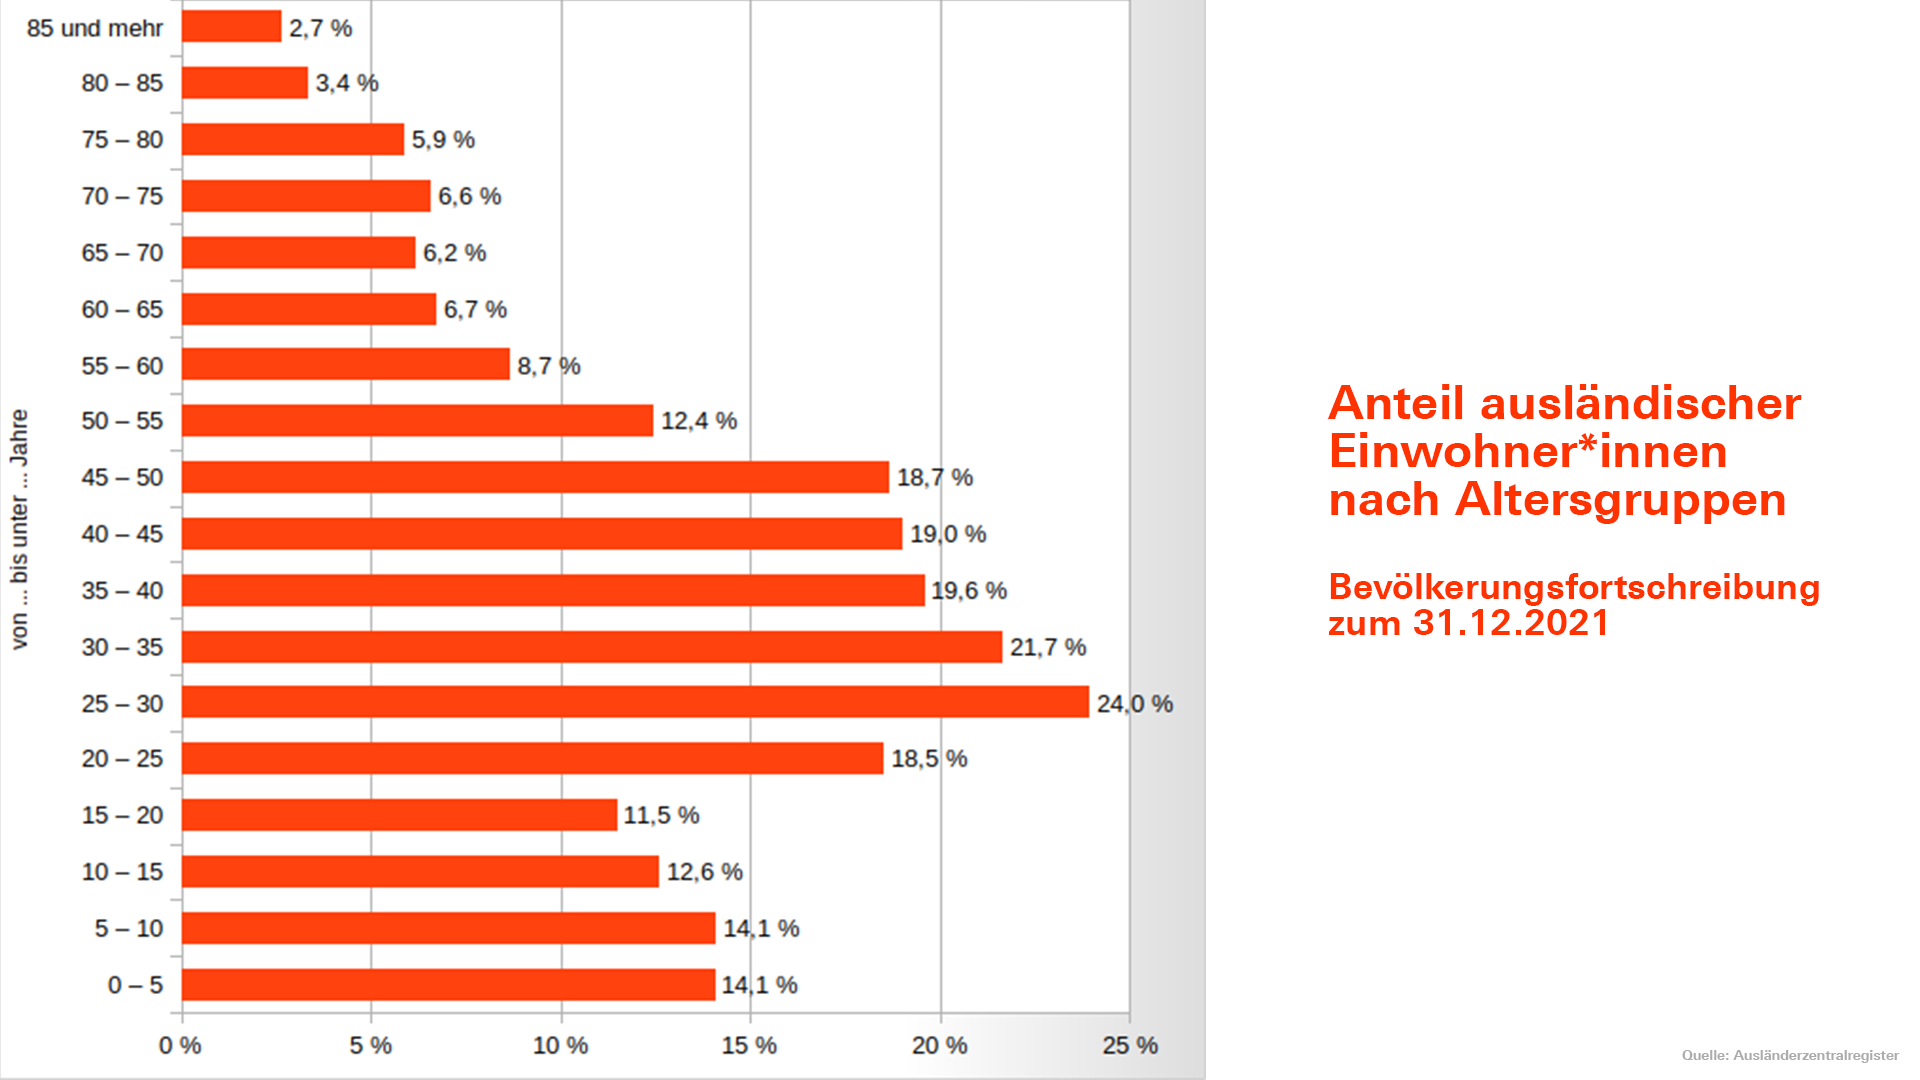 Anteil ausländischer Einwohner*innen in Deutschland nach Altersgruppen 2021